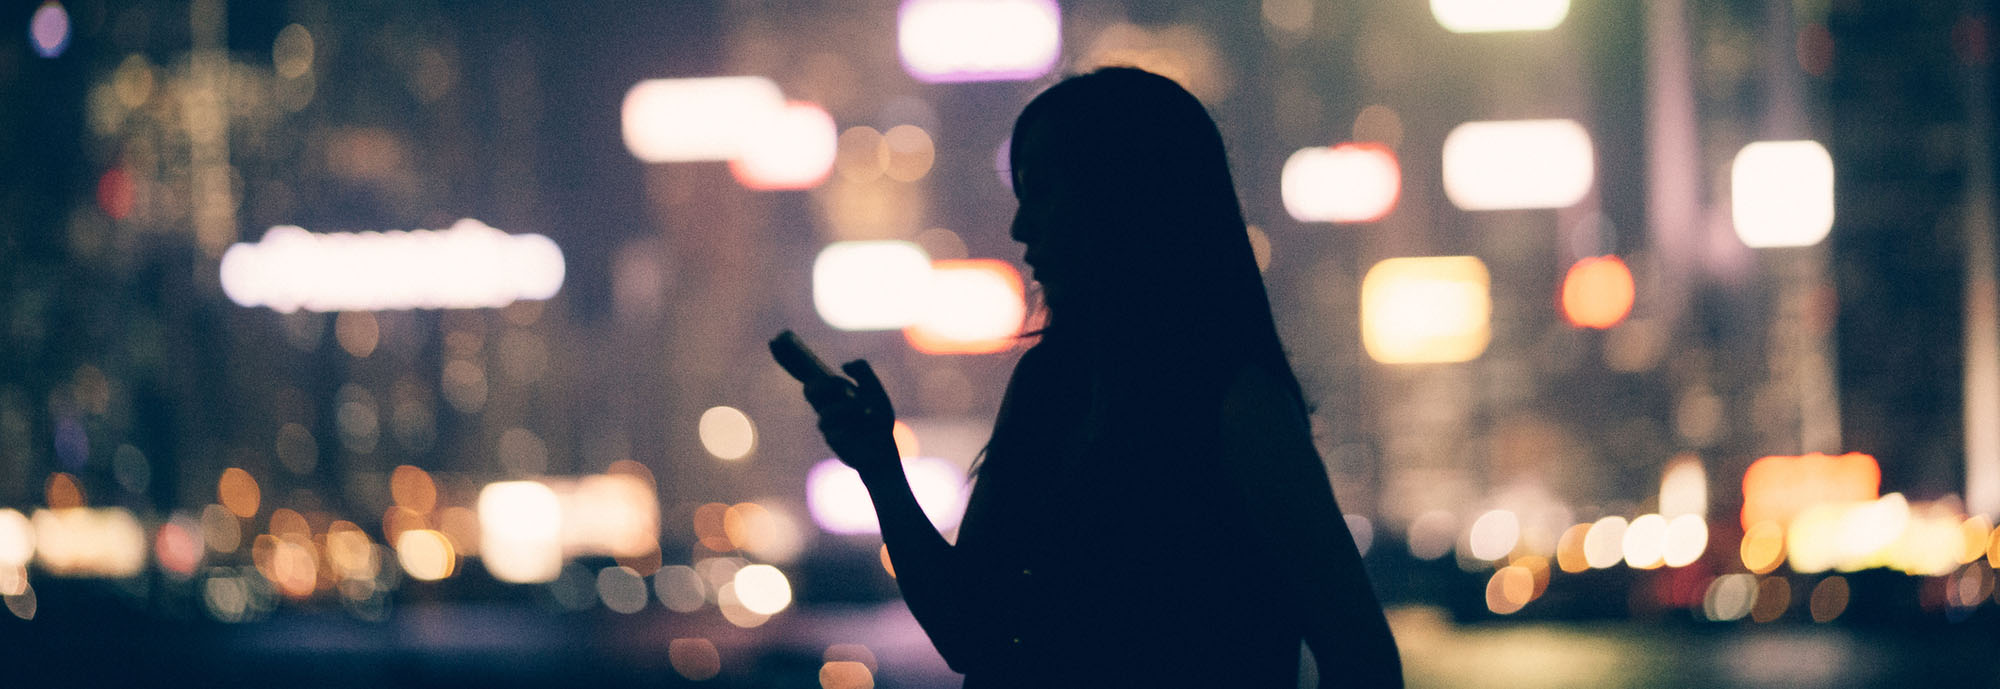 Die dunkle Silhouette einer Frau mit Mobiltelefon in der Hand vor den verschwommenen Lichtern der Stadt.